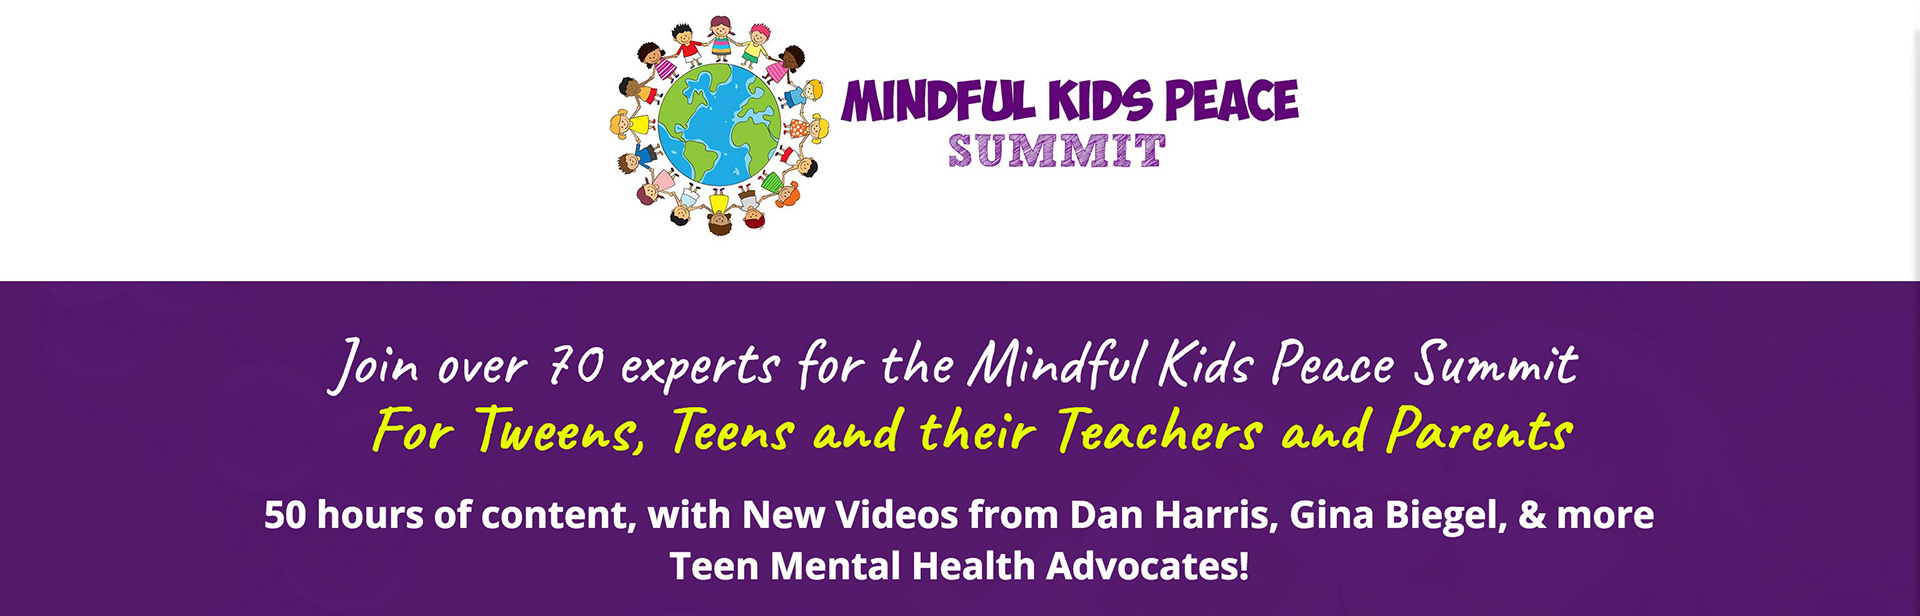 mindful-kids-peace-1920x616